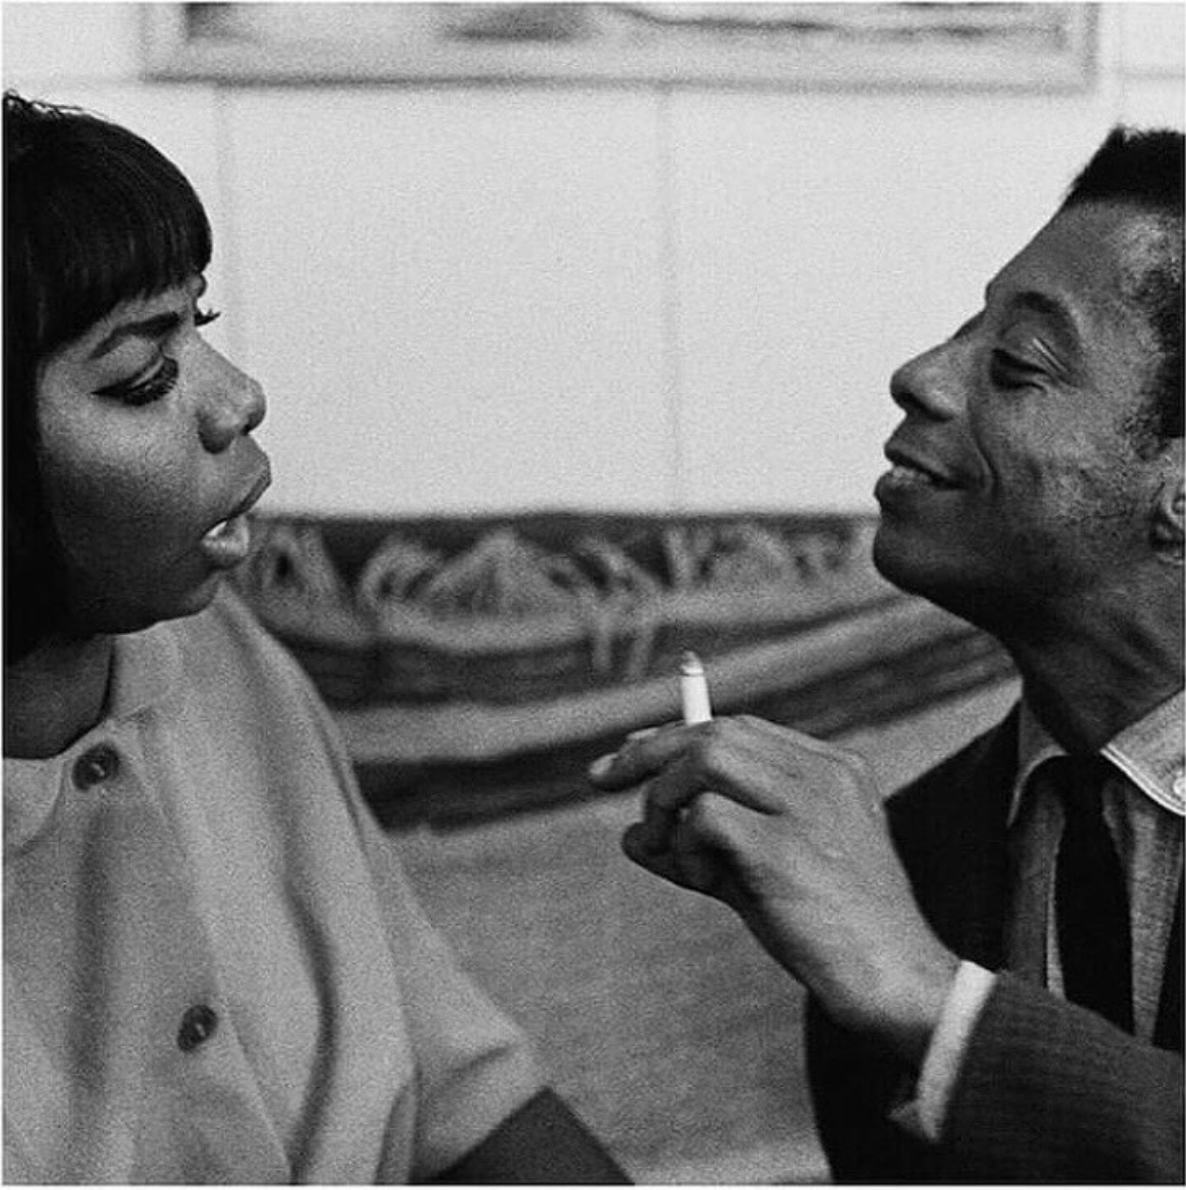 Nina Simone et James Baldwin
James Baldwin est un invité d'honneur de mon grand-père pour l'inauguration de la Fondation Maeght, en juillet 1964
.
#balwin #jimmybaldwin #jamesbaldwin #saintpauldevence #cotedazur #roman #ecrivain #lachambredegiovanni #giovannisroom #ninasimone